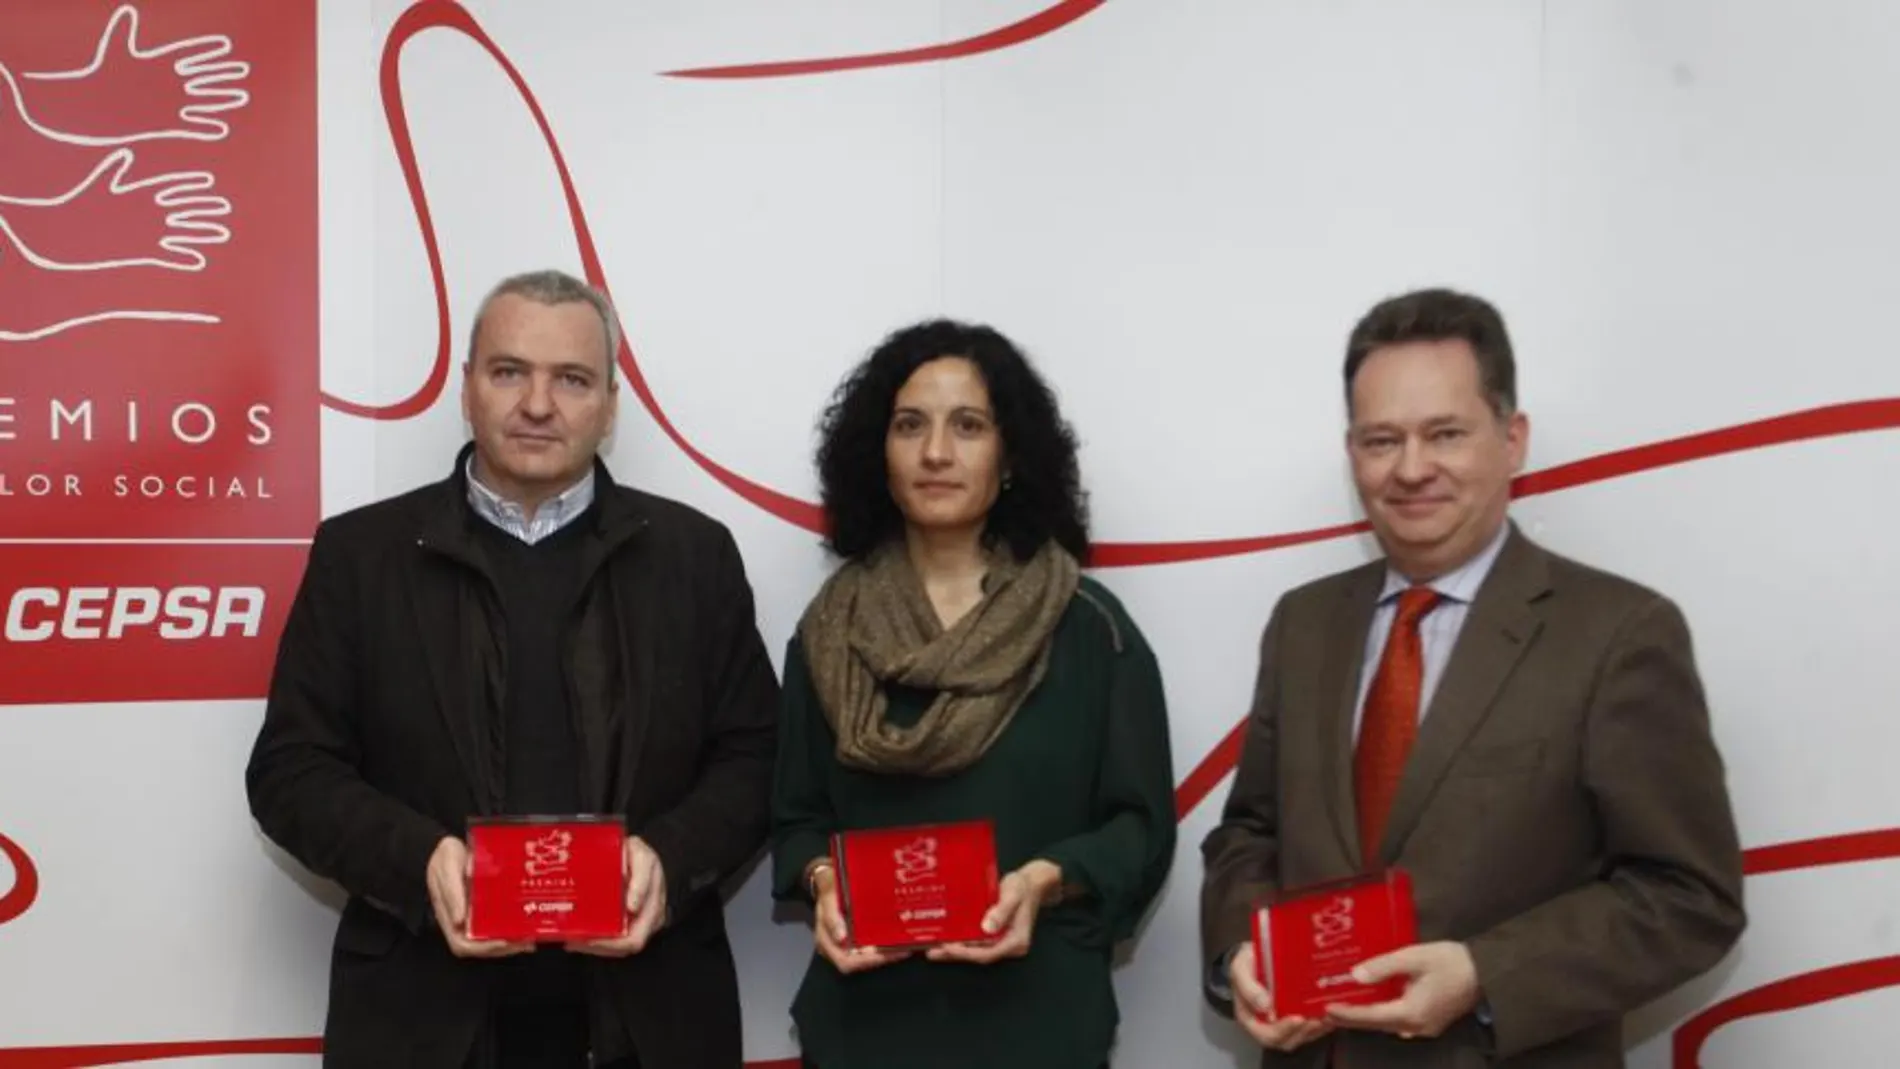 Los tres representantes de las asociaciones galardonadas ayer en Madrid posando con el premio. De izquierda a derecha: Pablo Llano (Cesal), Antonia Suances (Candelita) y Carlos Martín (Amdem)